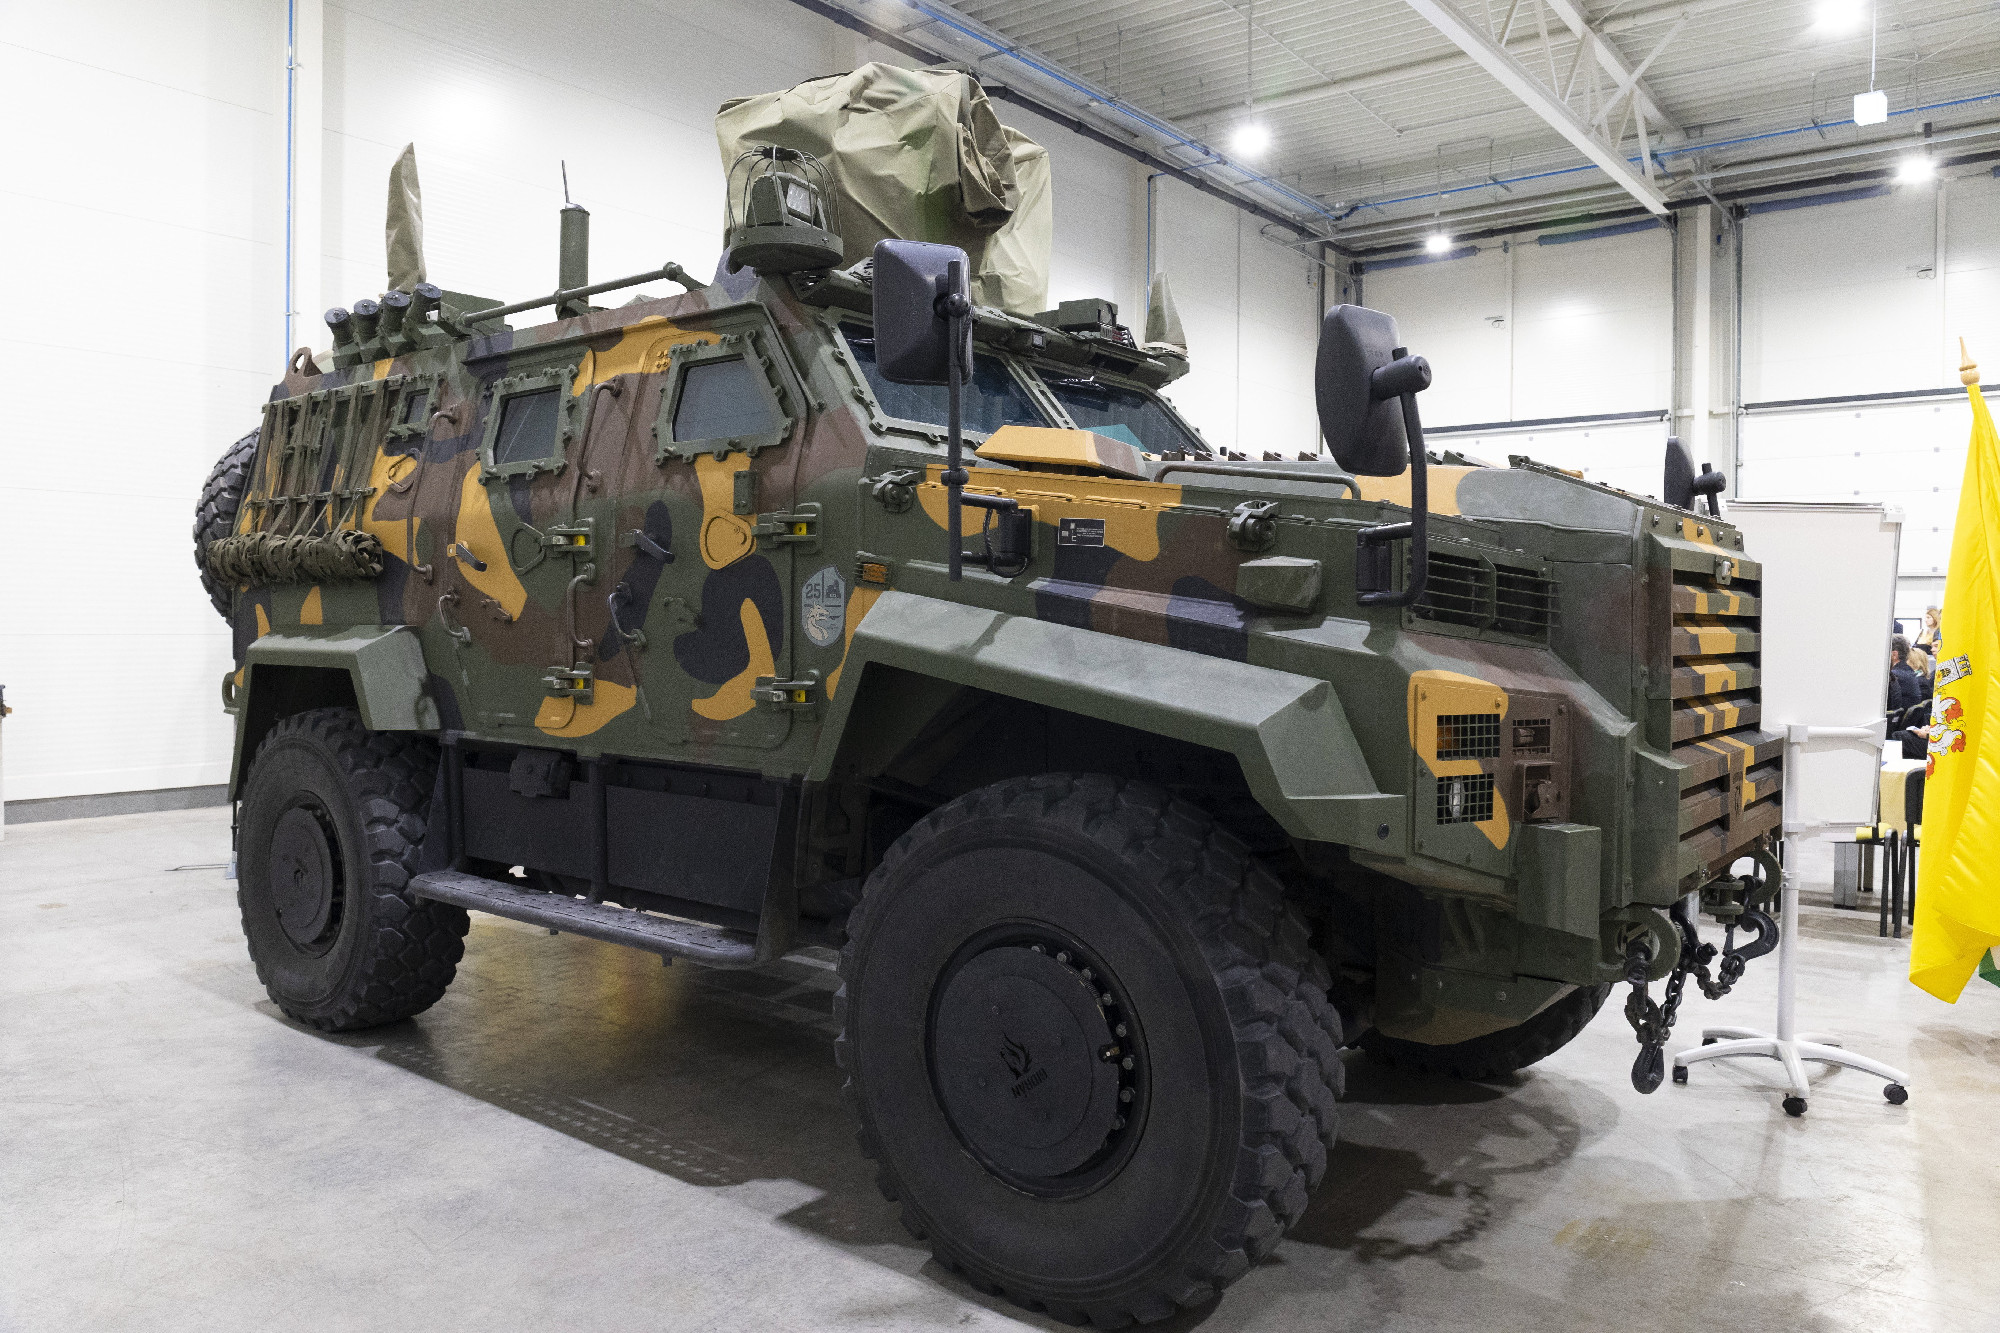 Gidrán típusú harcjárművek felszerelésével hadiipari termelés indul Kaposváron